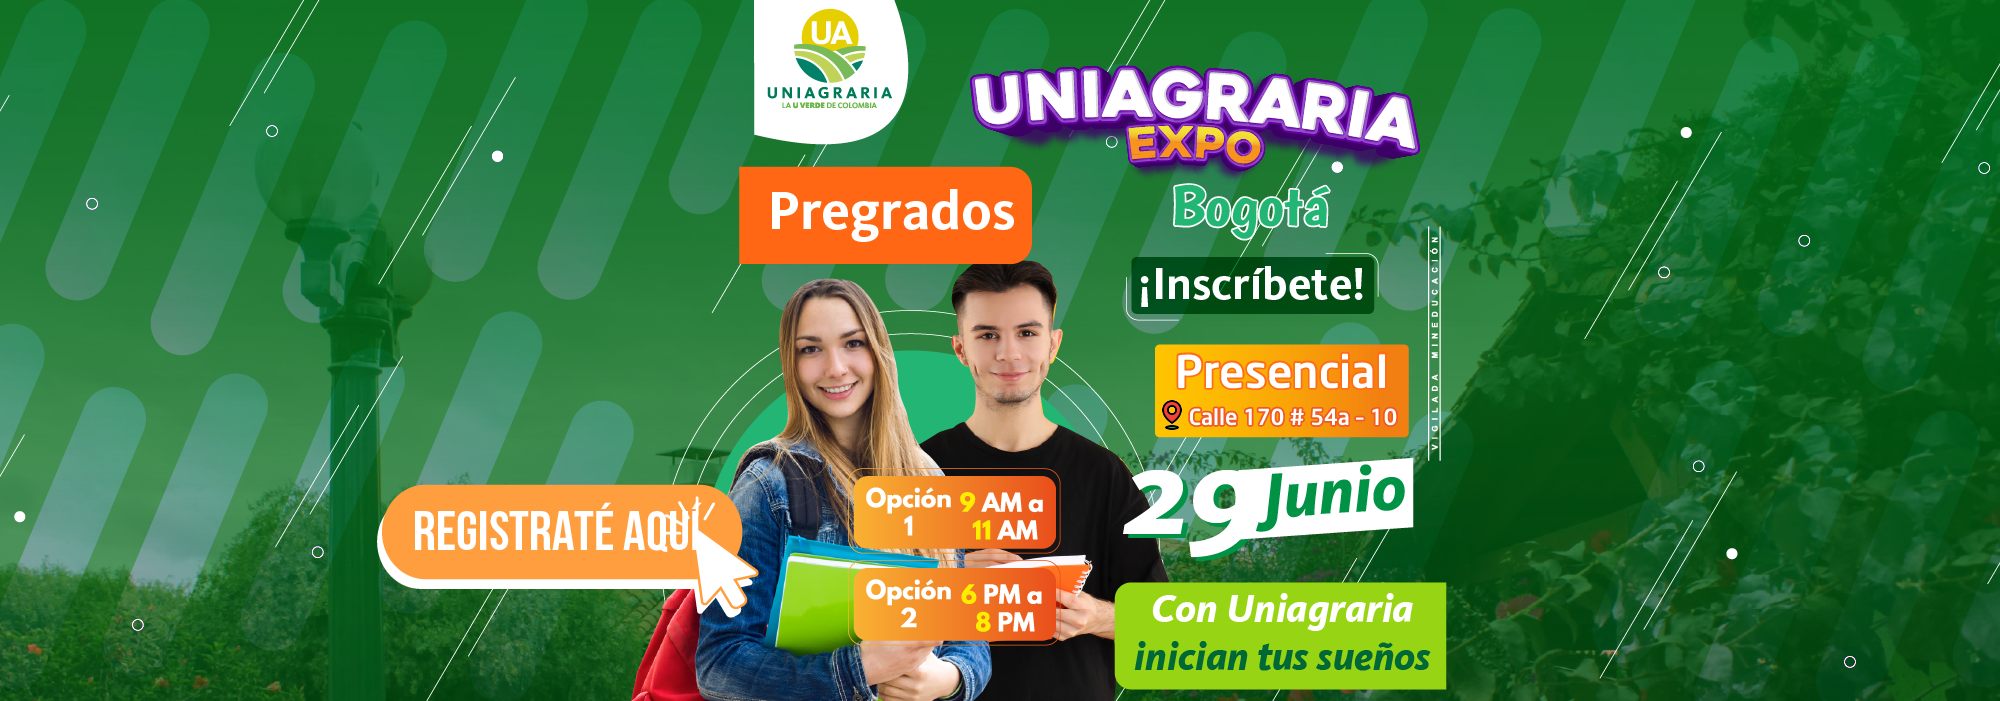 Banner Expo Pregrados